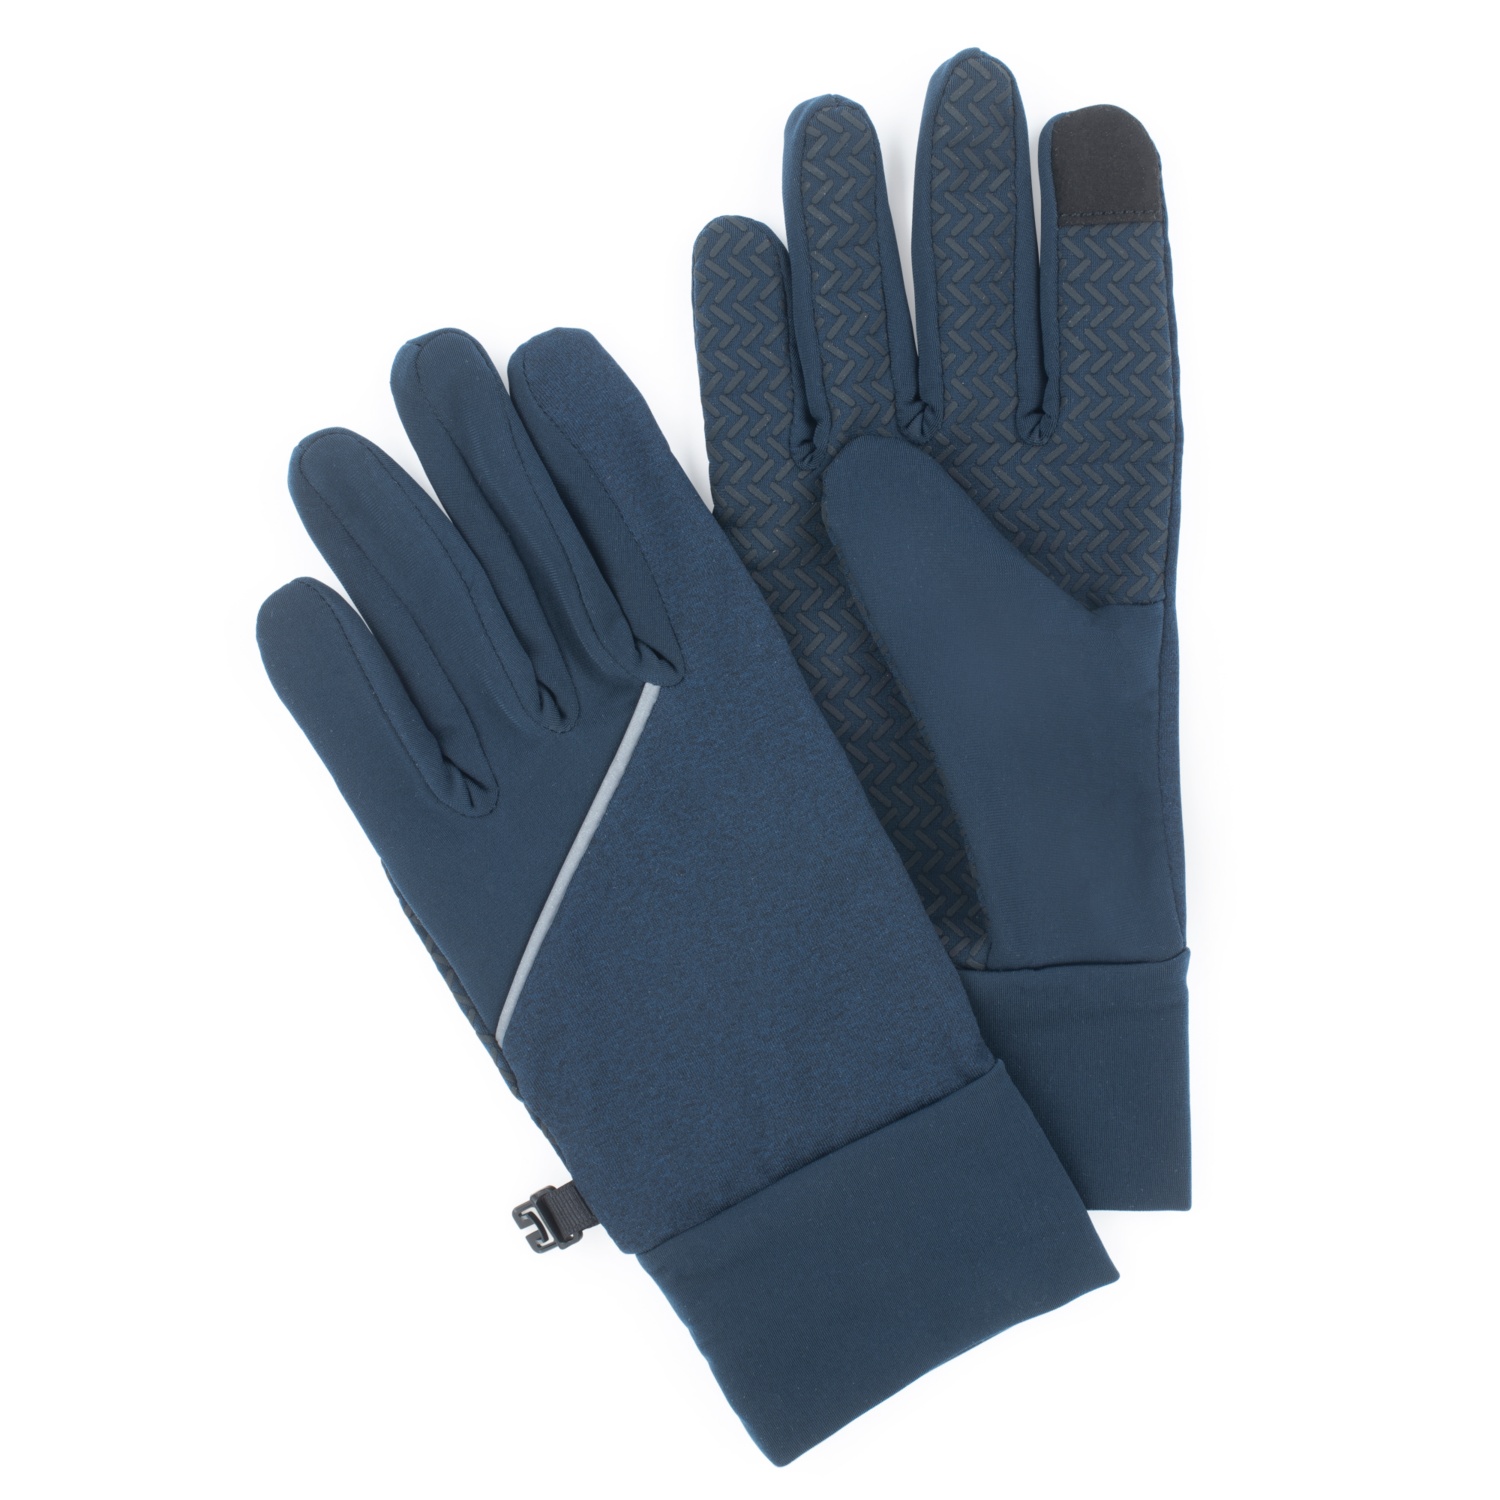 CRANE Damen Winter-Cross Handschuhe